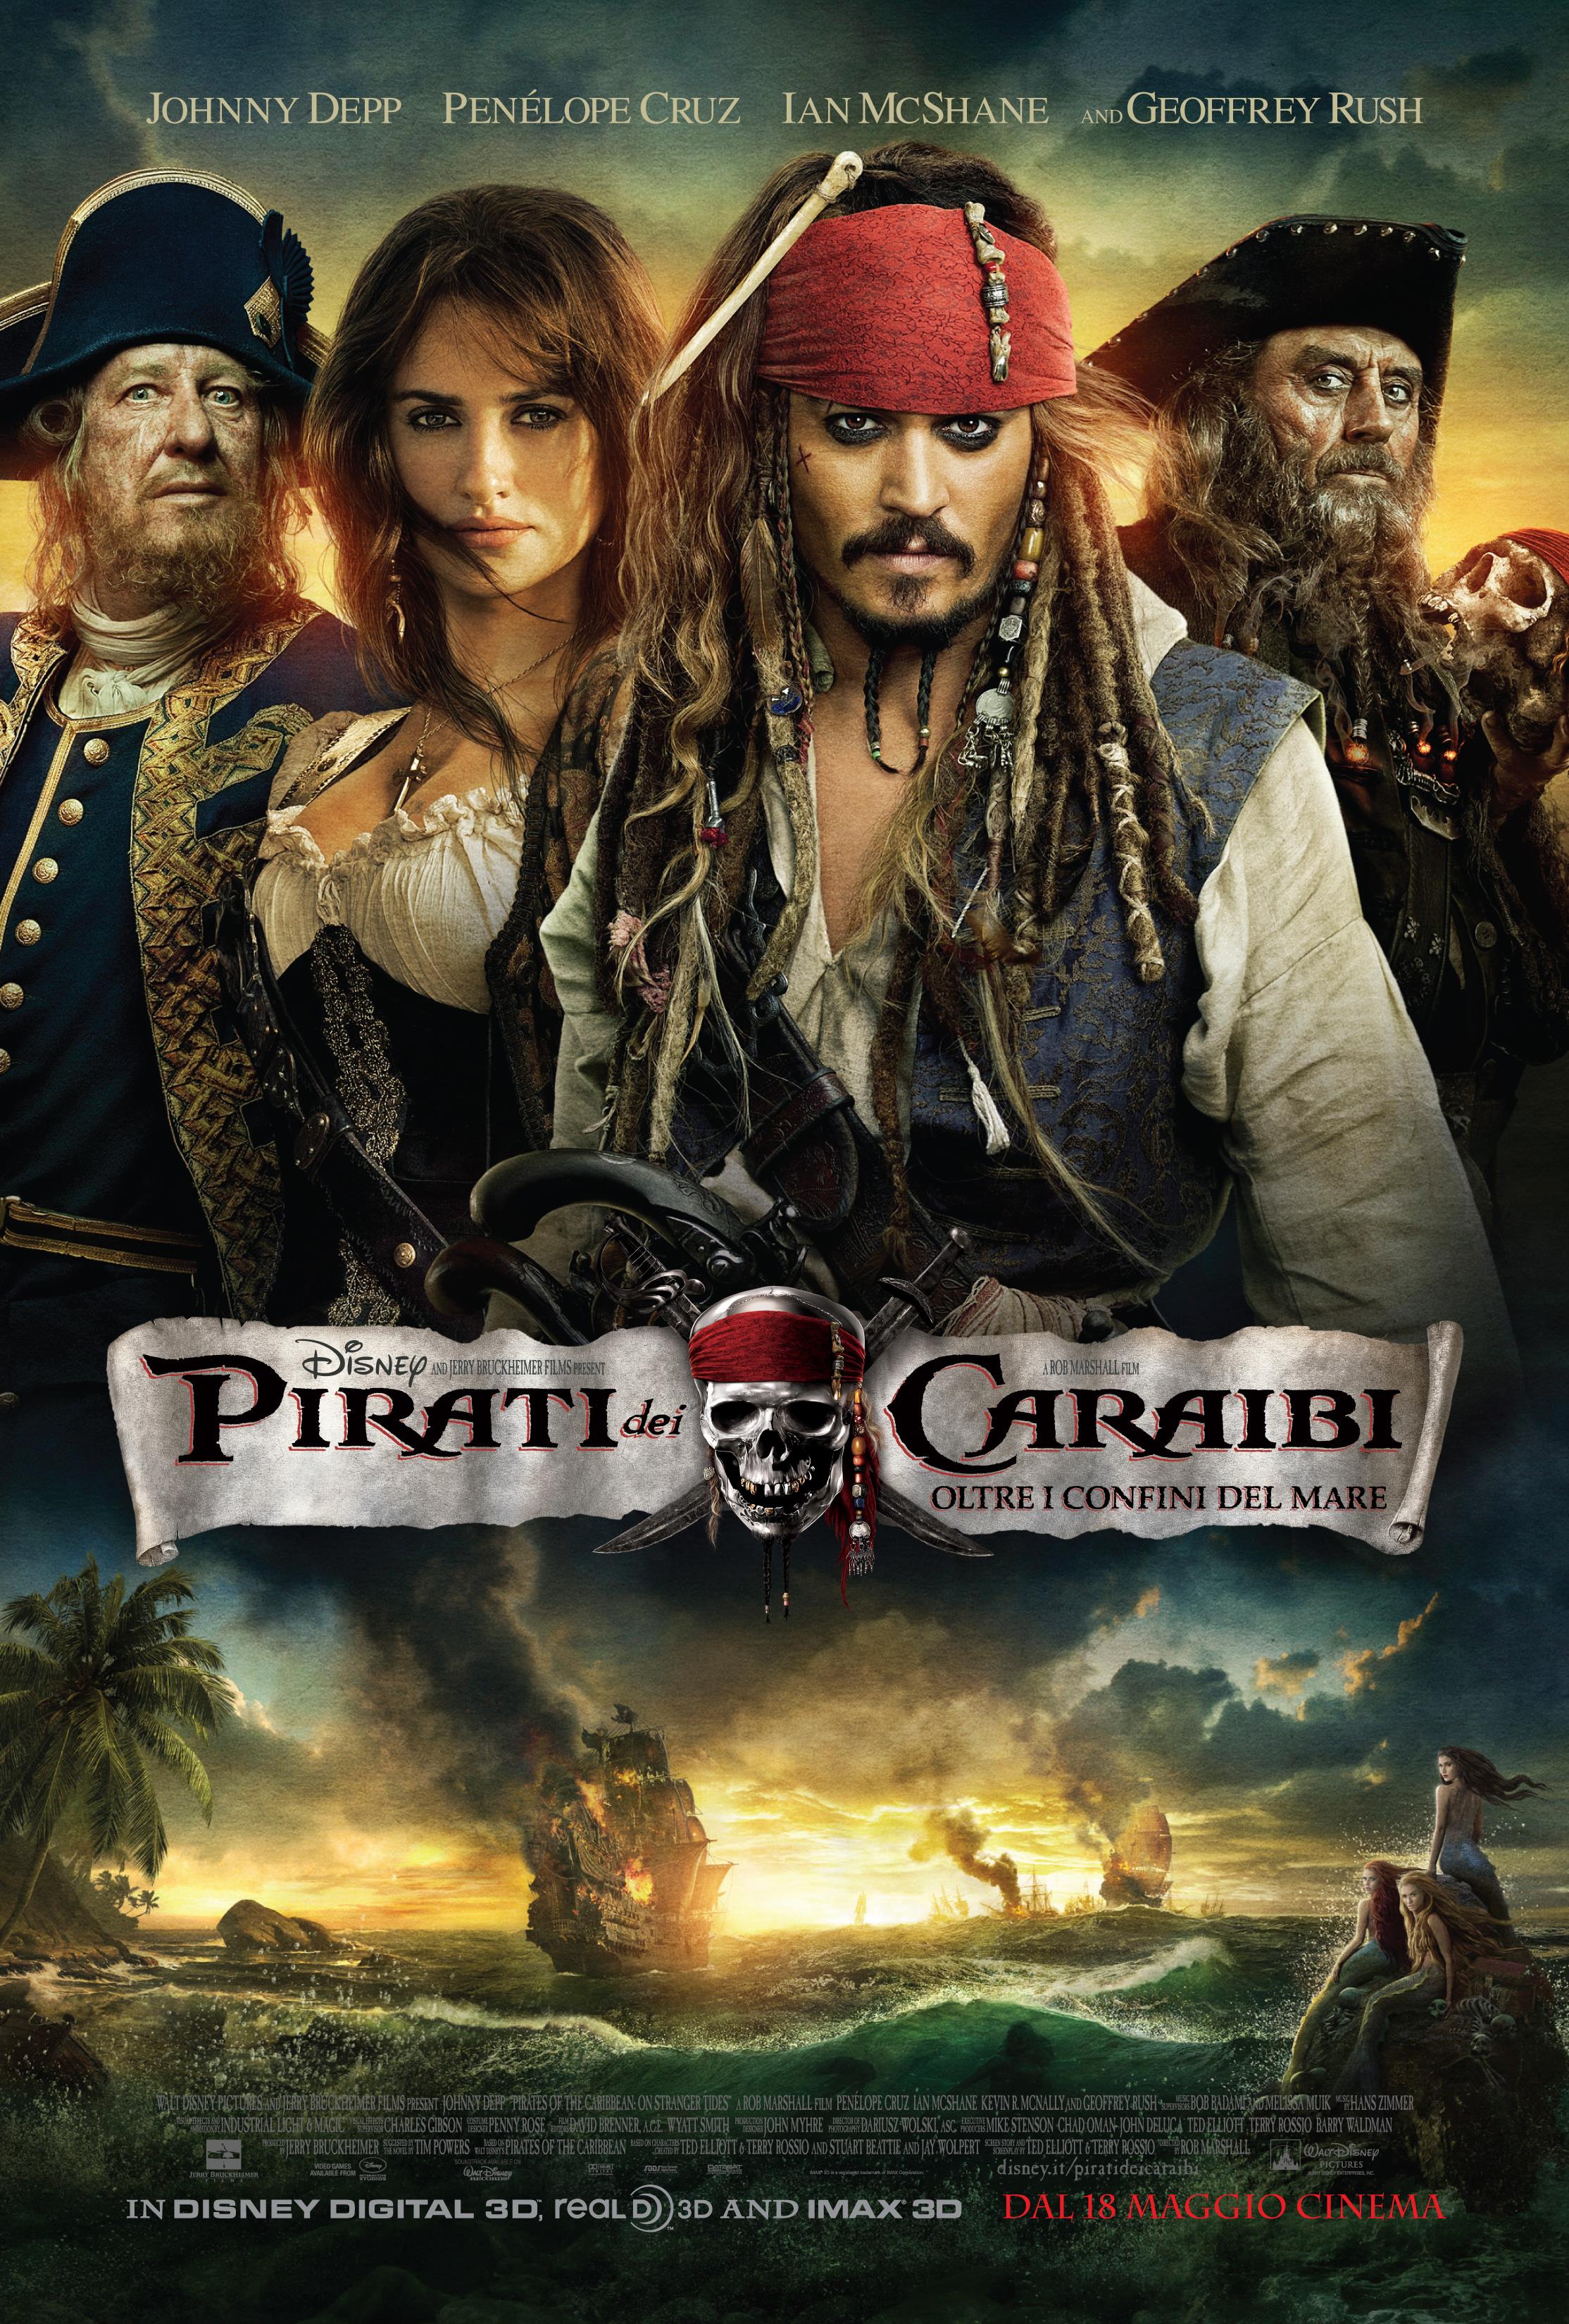 Pirati dei caraibi – Oltre i confini del mare